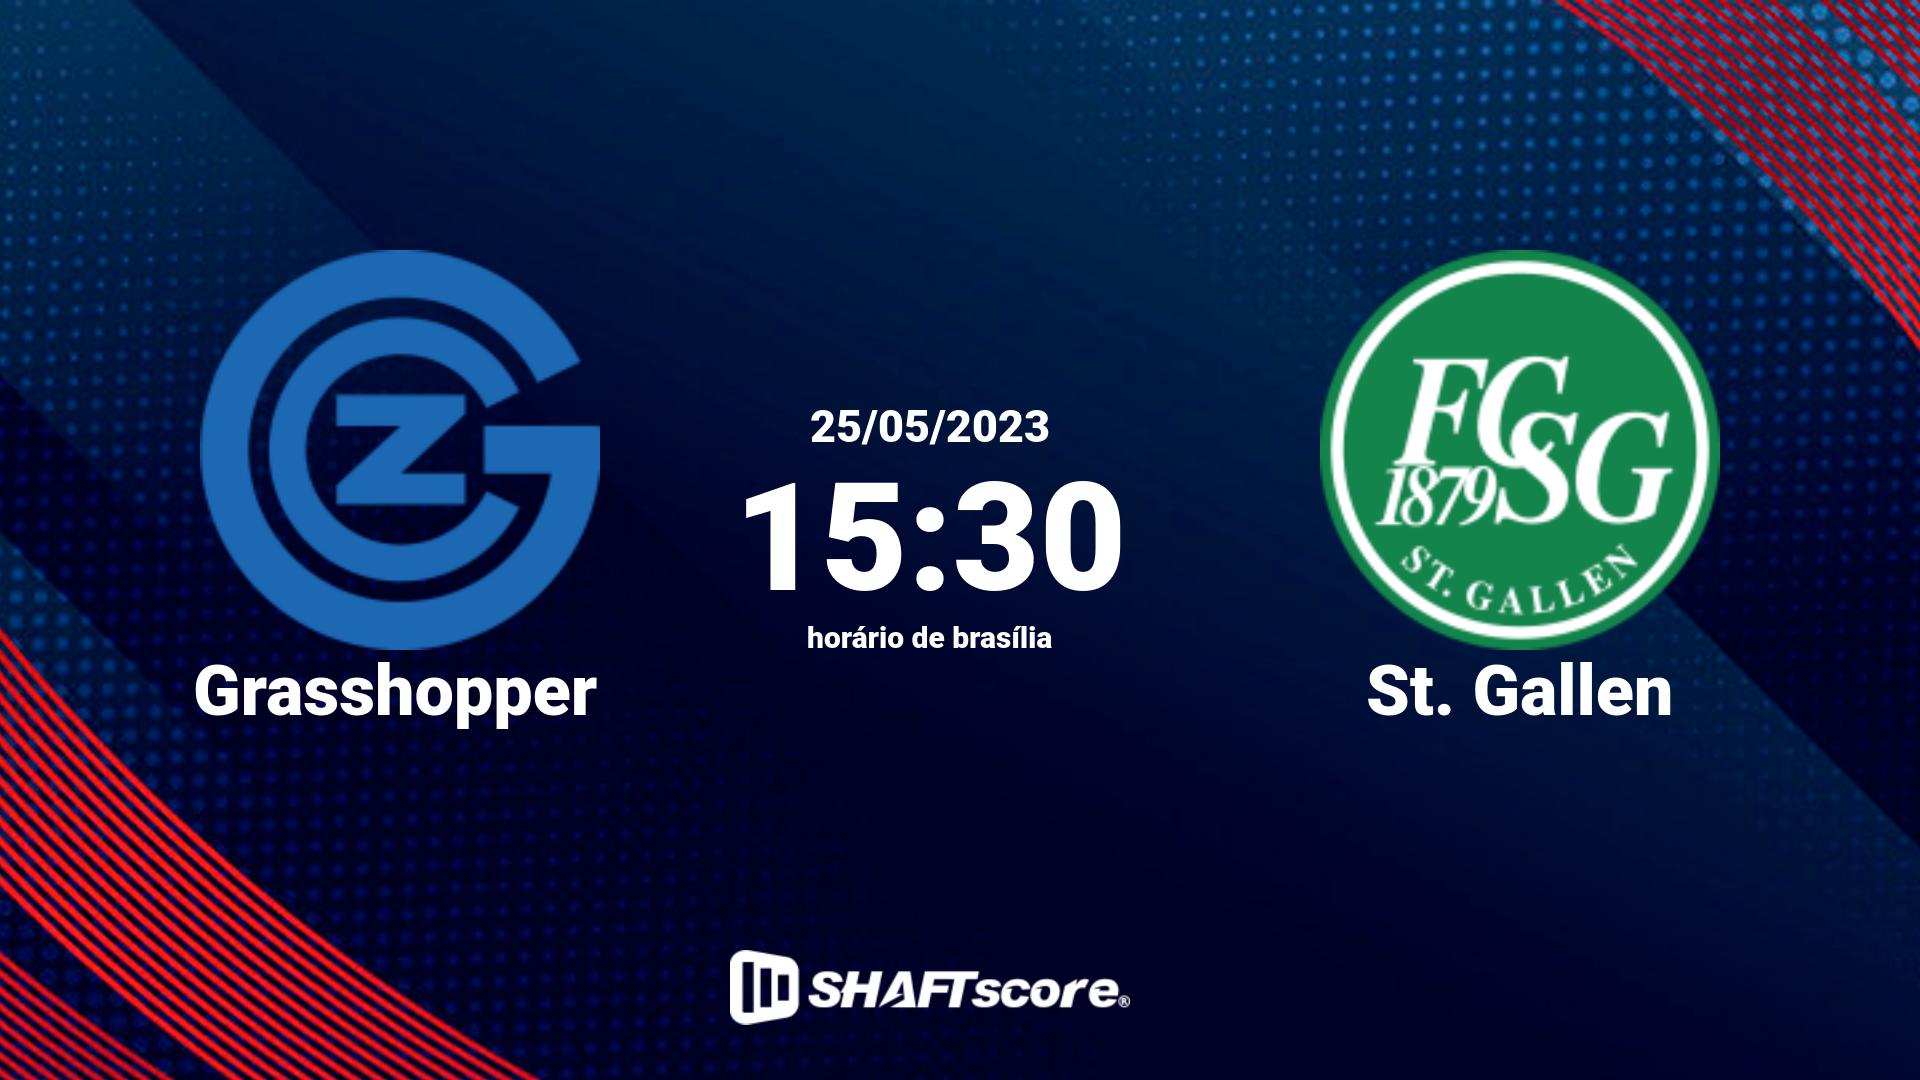 Estatísticas do jogo Grasshopper vs St. Gallen 25.05 15:30